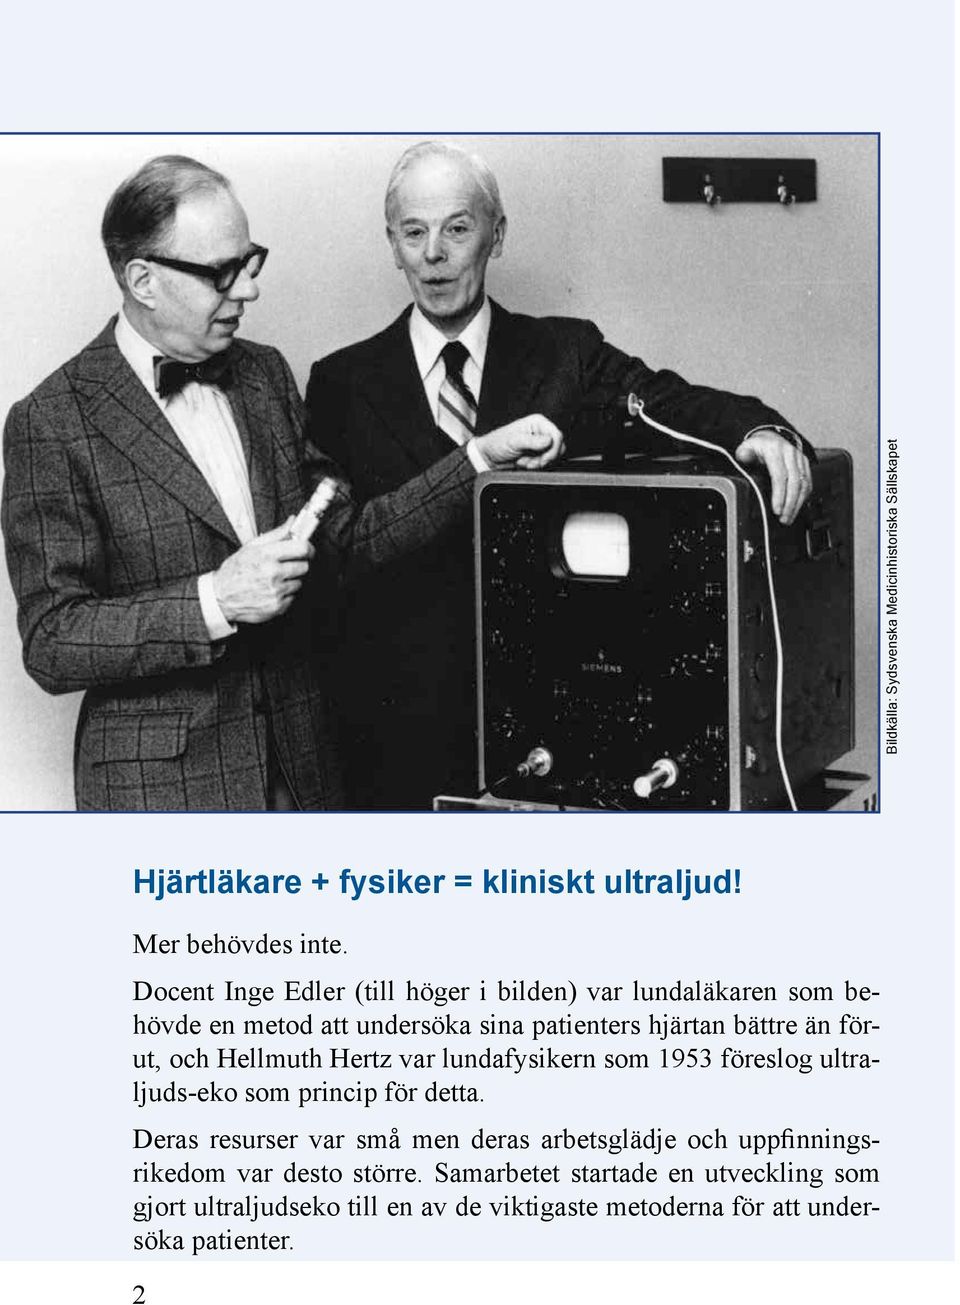 Hellmuth Hertz var lundafysikern som 1953 föreslog ultraljuds-eko som princip för detta.